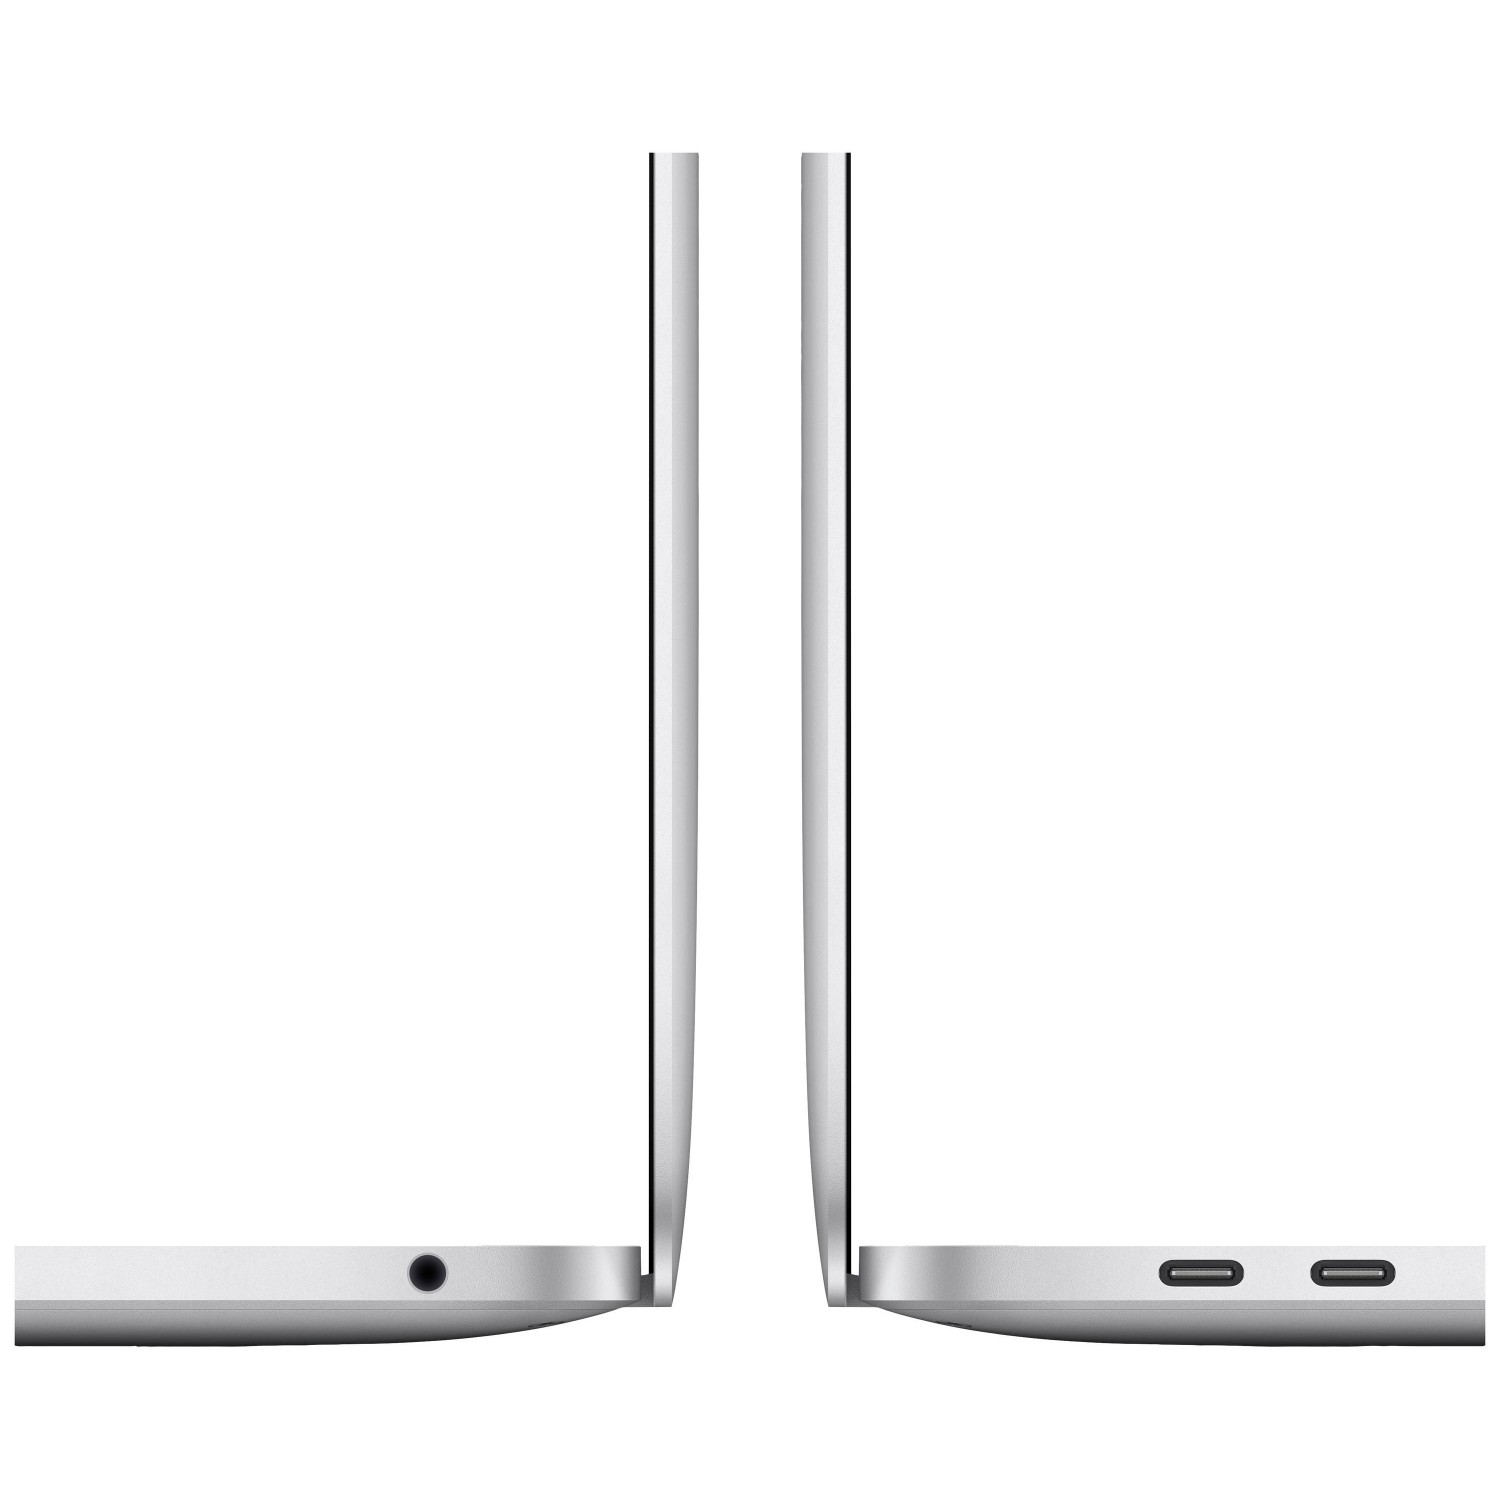 لپ تاپ Apple MacBook Pro 13 2020 CTO - Silver - B-3